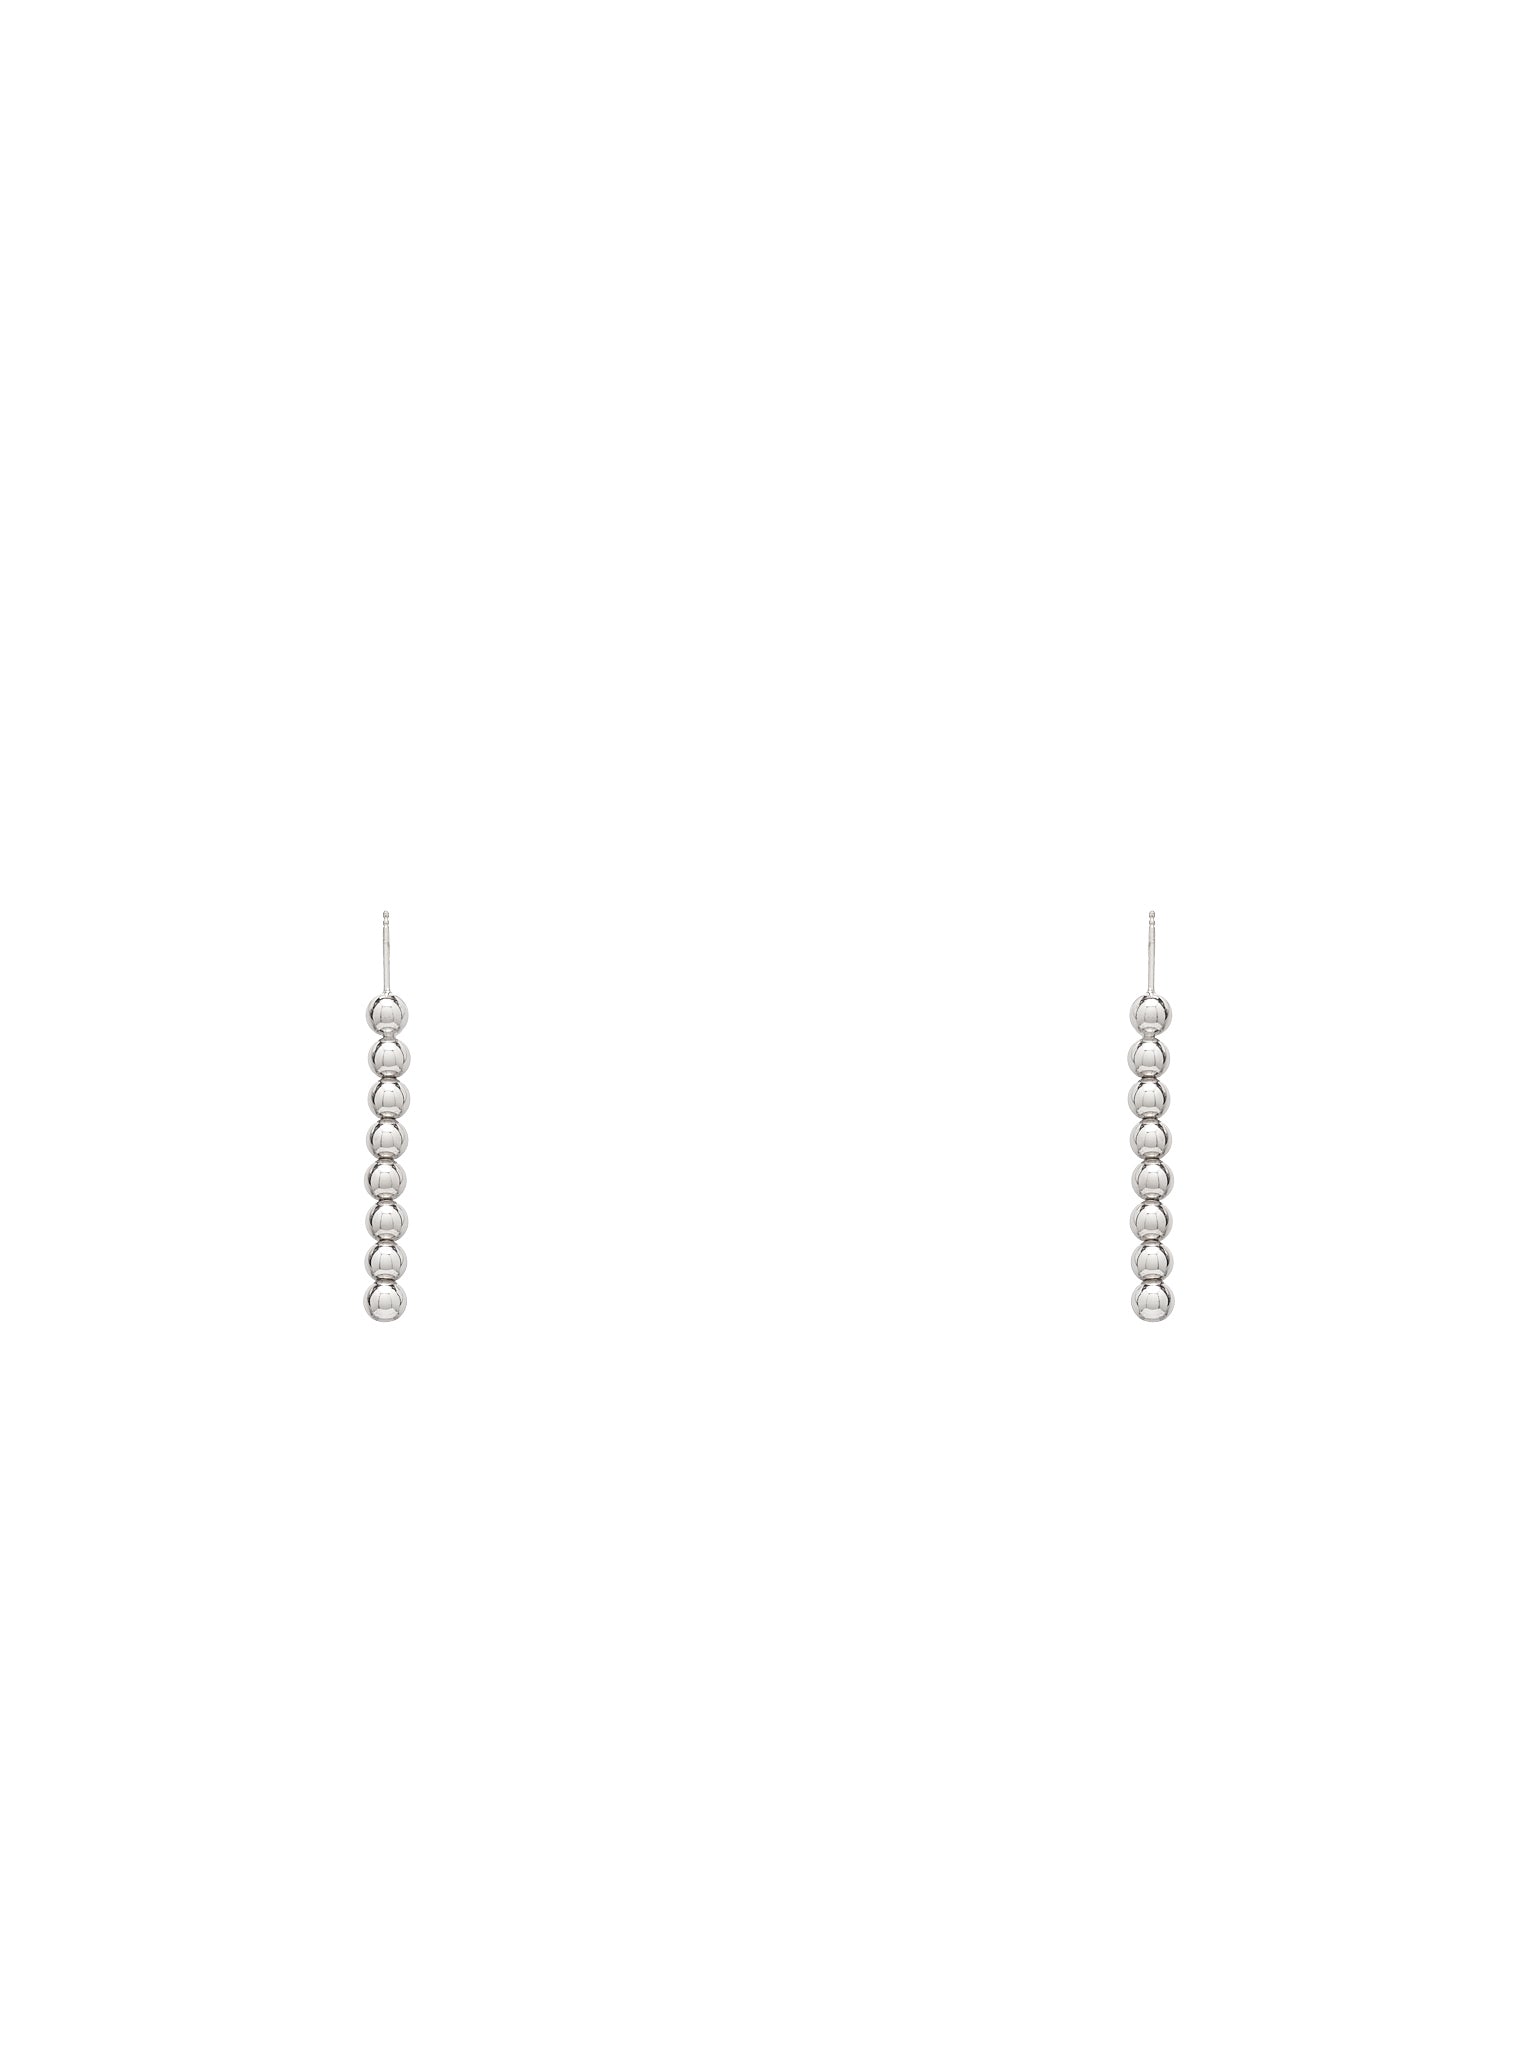 Bead Branch Earrings (EARRINGS67-S24-C01-SILVER